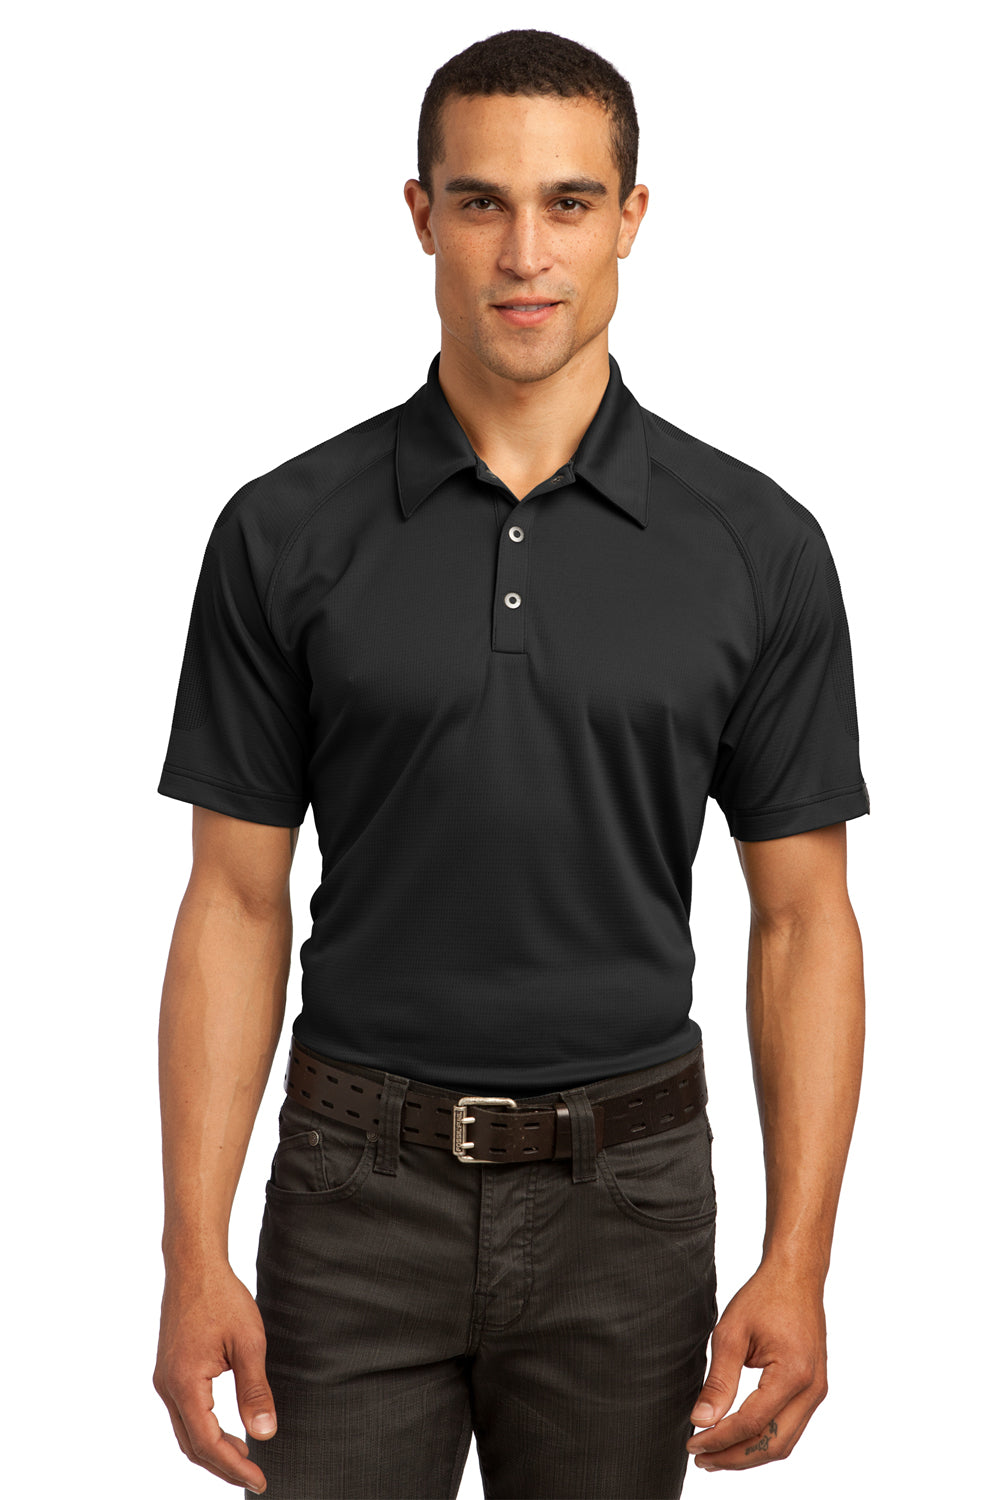 Ogio OG110 Mens Optic Moisture Wicking Short Sleeve Polo Shirt Black Front